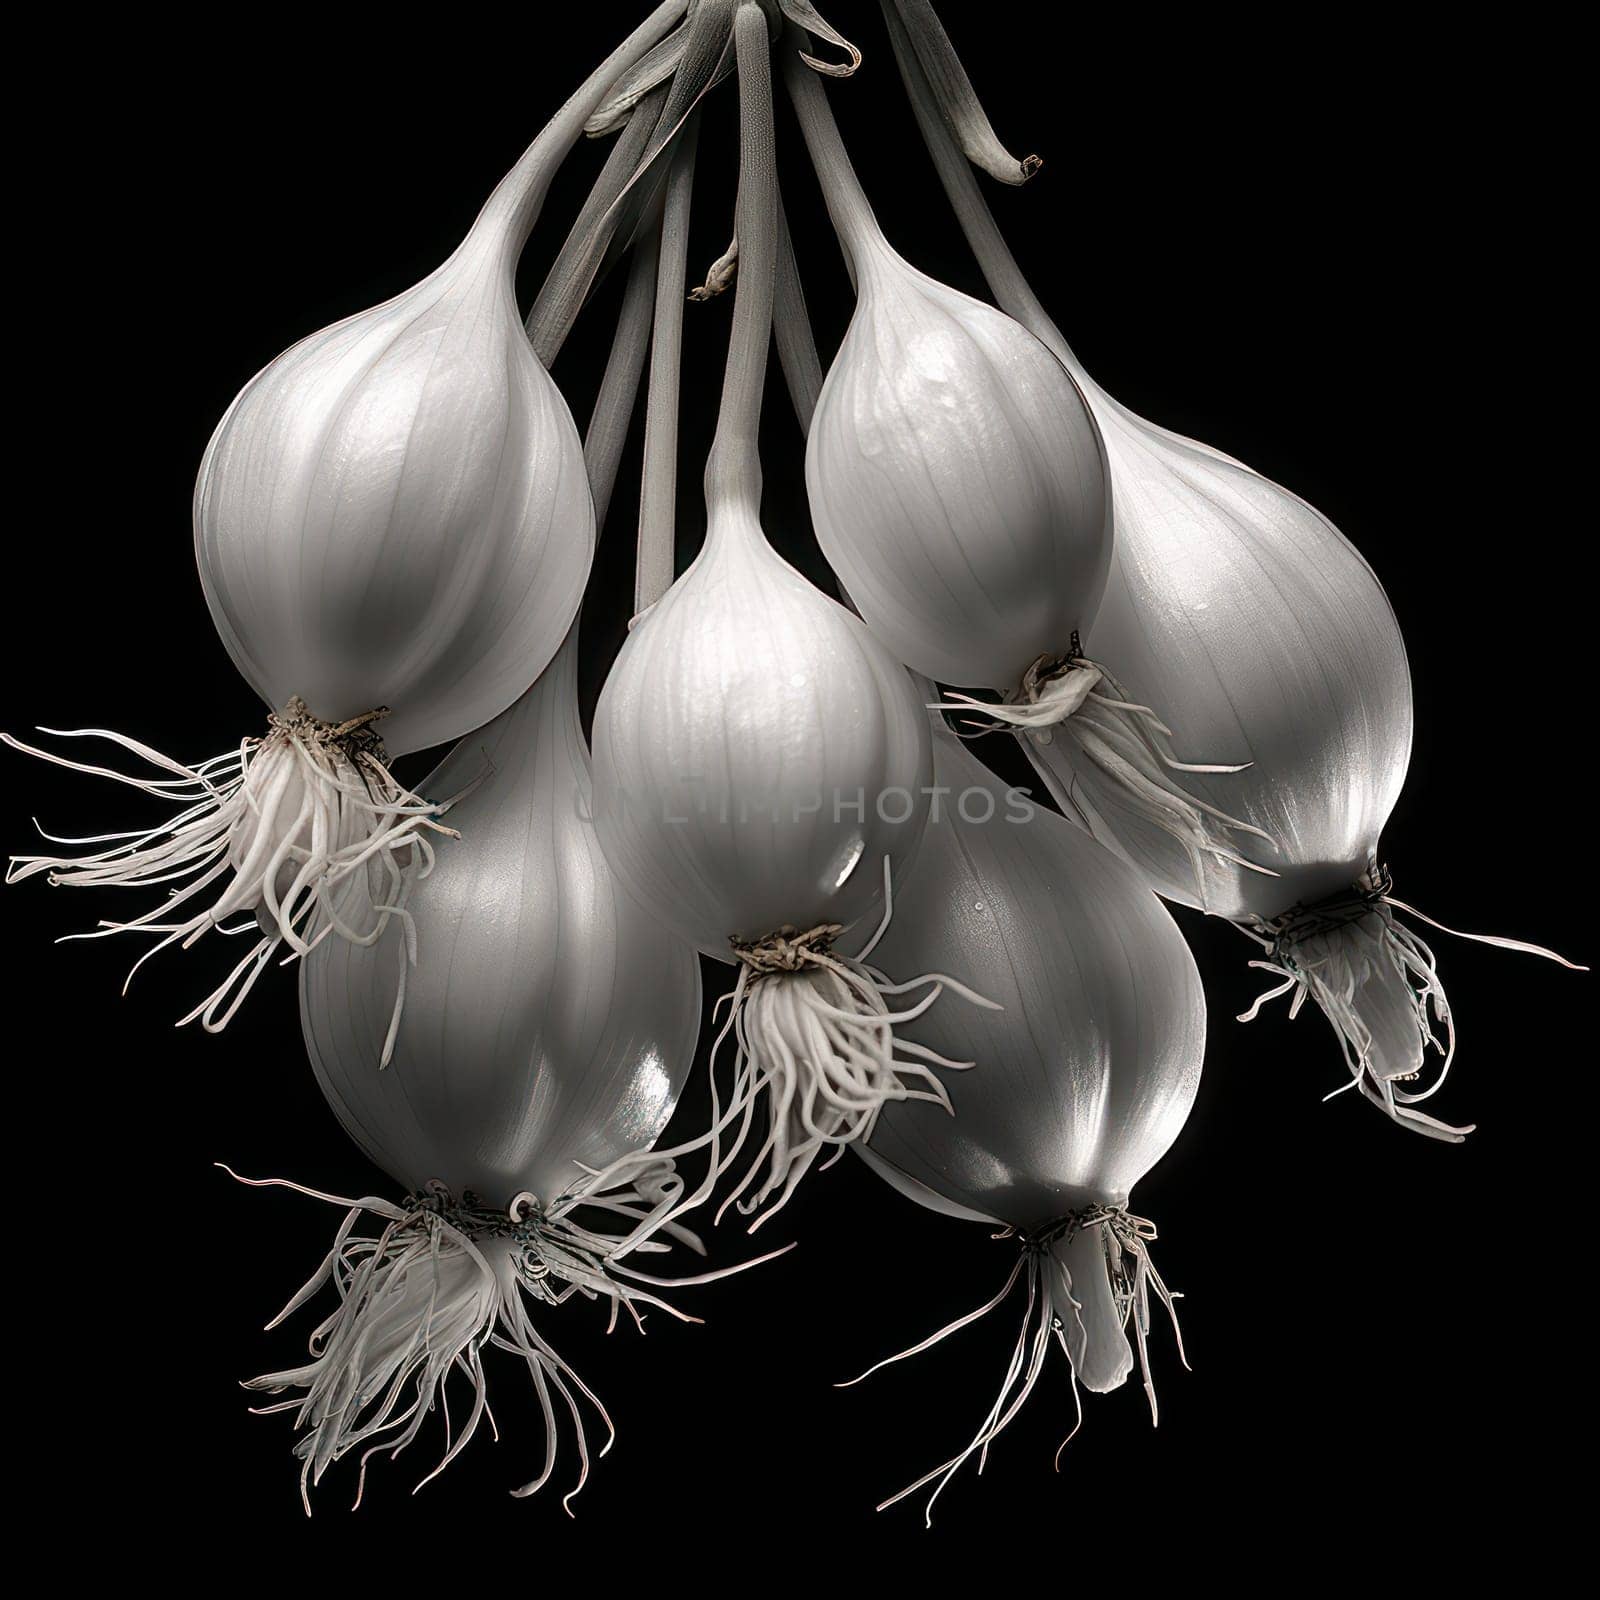 Garlic, Vegetable, Ingredient: Organic Closeup of Fresh Raw Garlic Bulbs on White Background